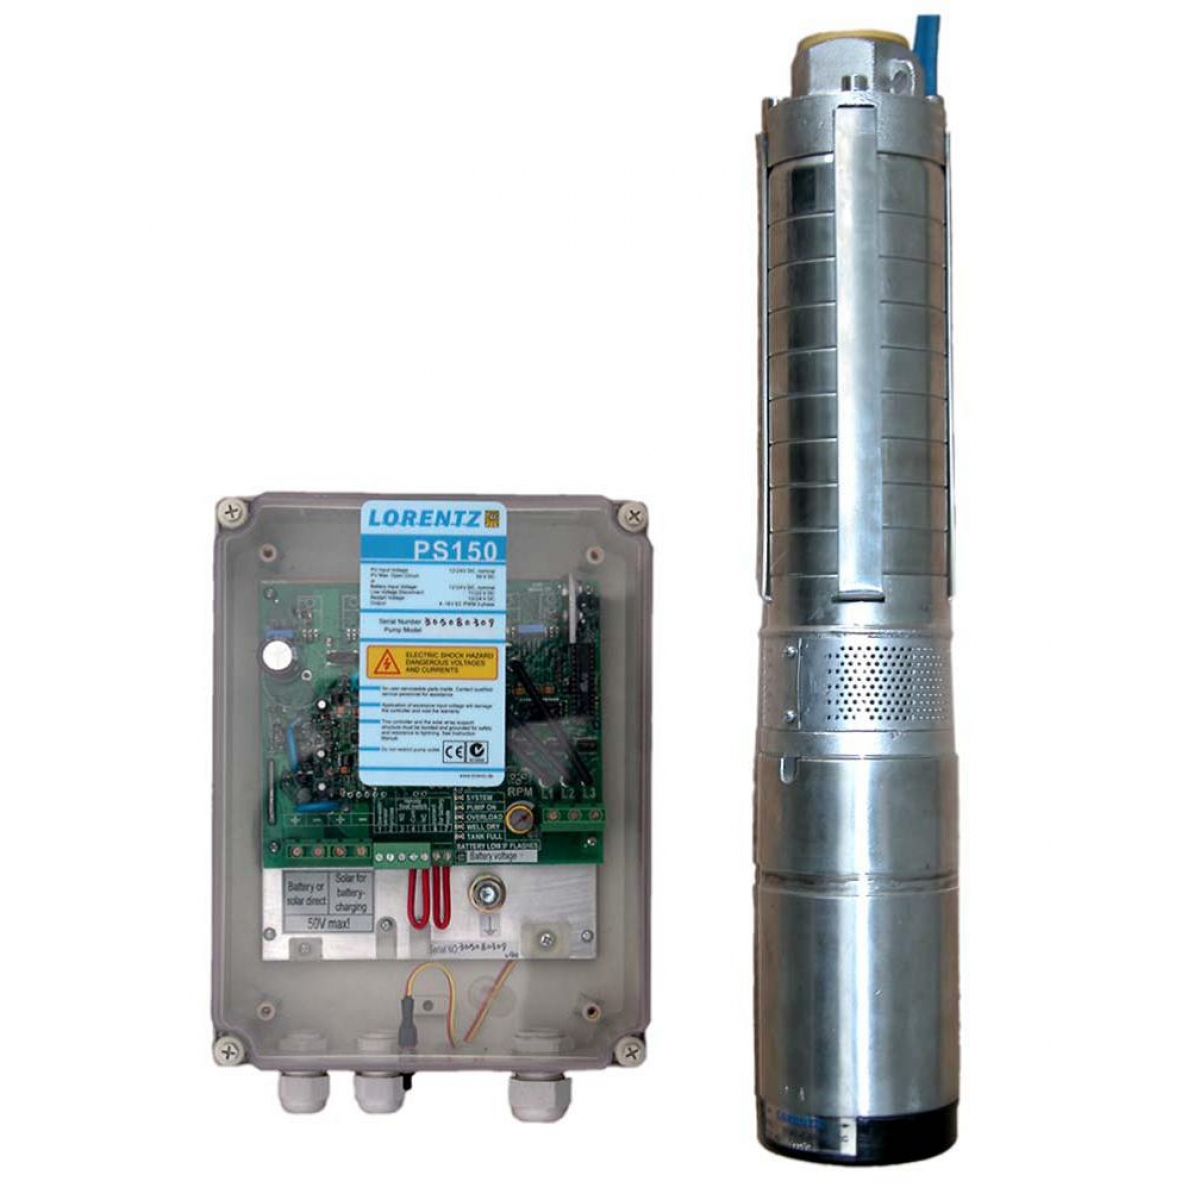 Système de pompage solaire submersible LORENTZ PS150 C-SJ5-8